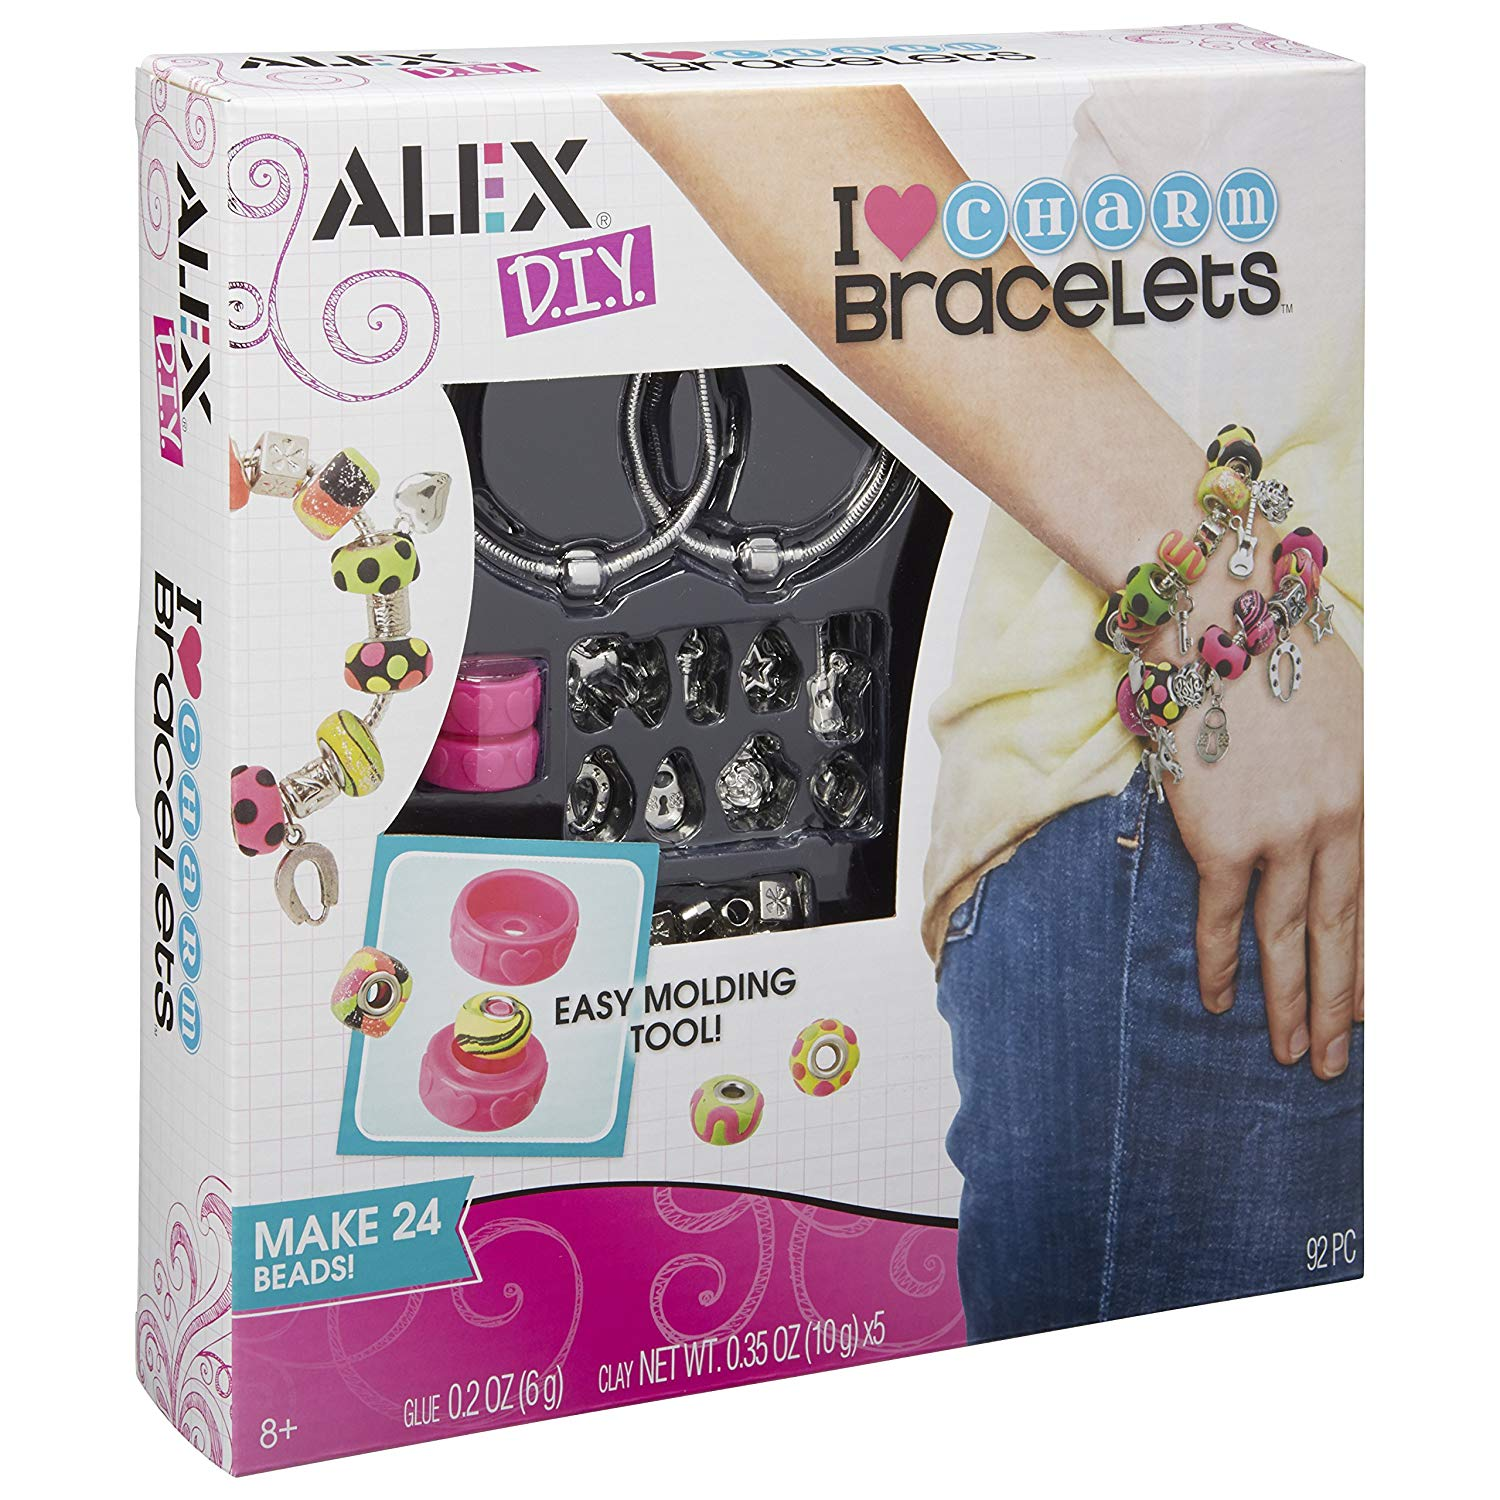 ALEX Toys DIY Wear I Heart Charm Bracelets Kit Only $11.18!